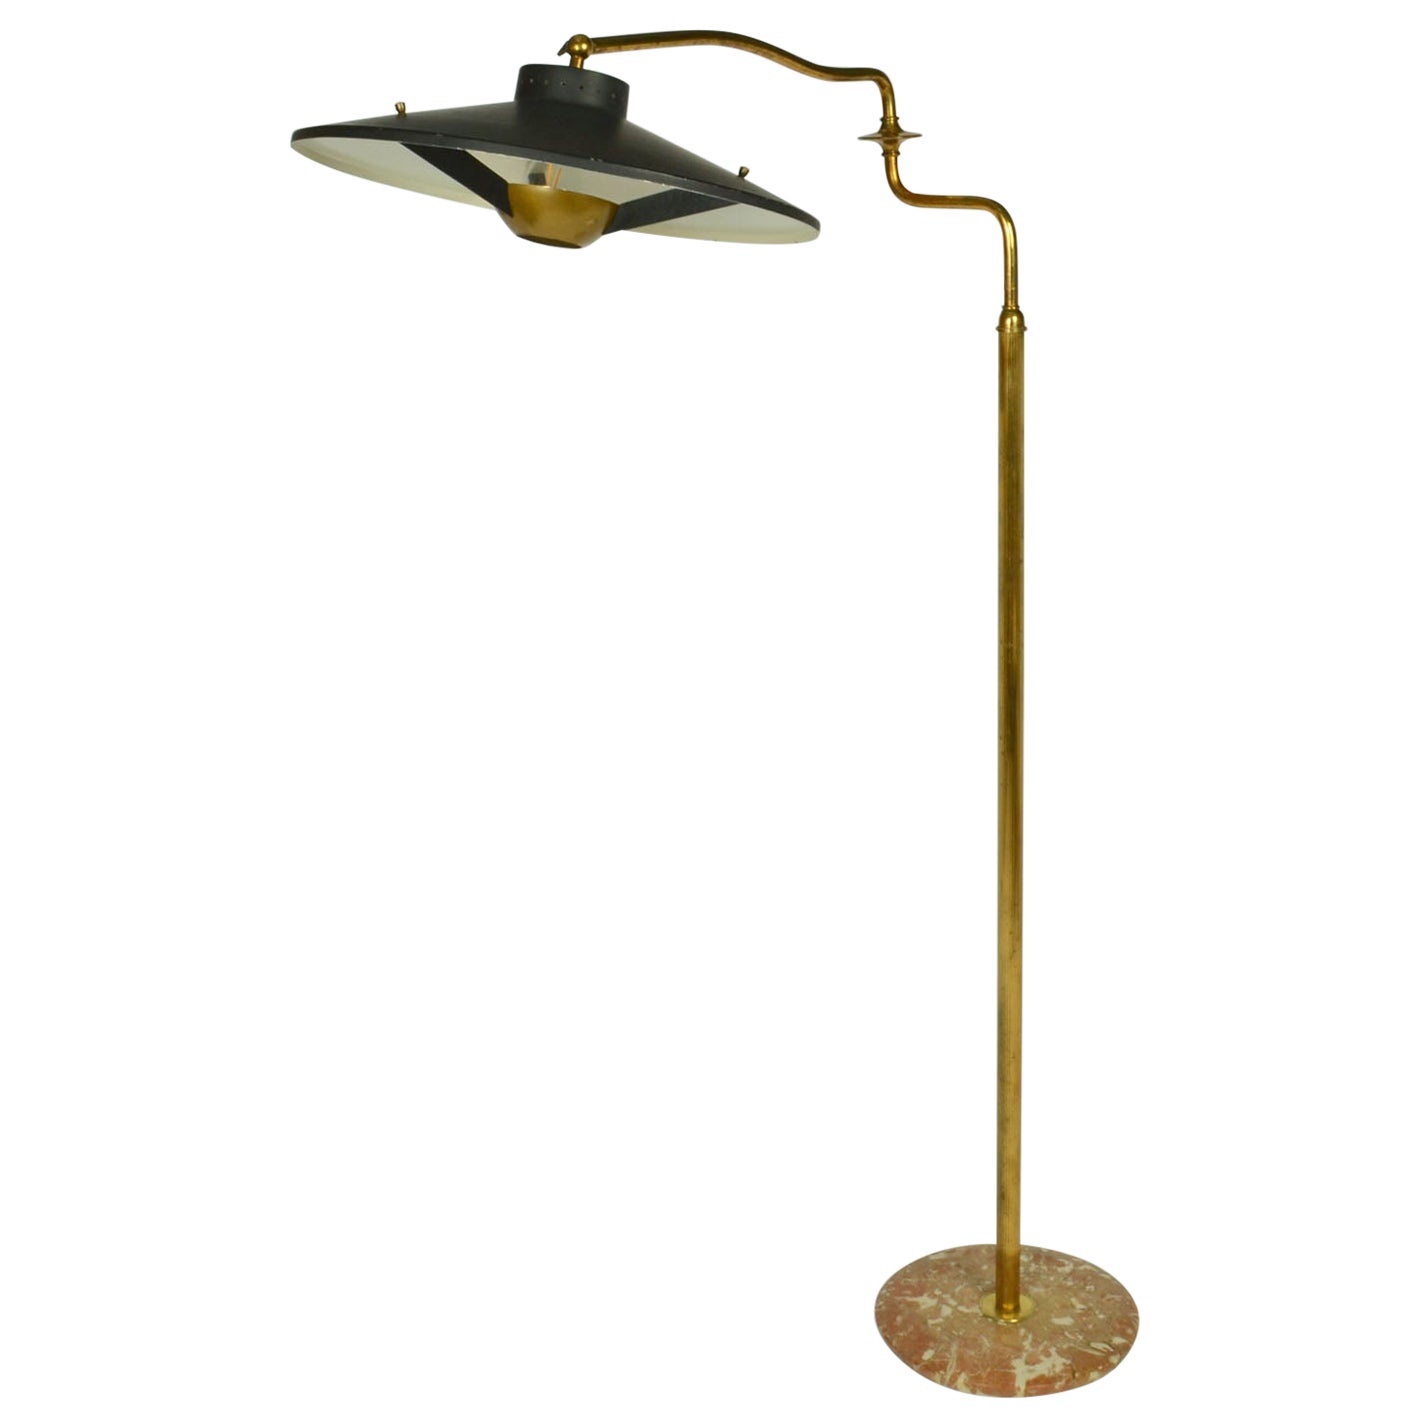 Italian Swing Arm Brass Floor Lamp, Original Black Shade, 1950's Stilnovo Style For Sale